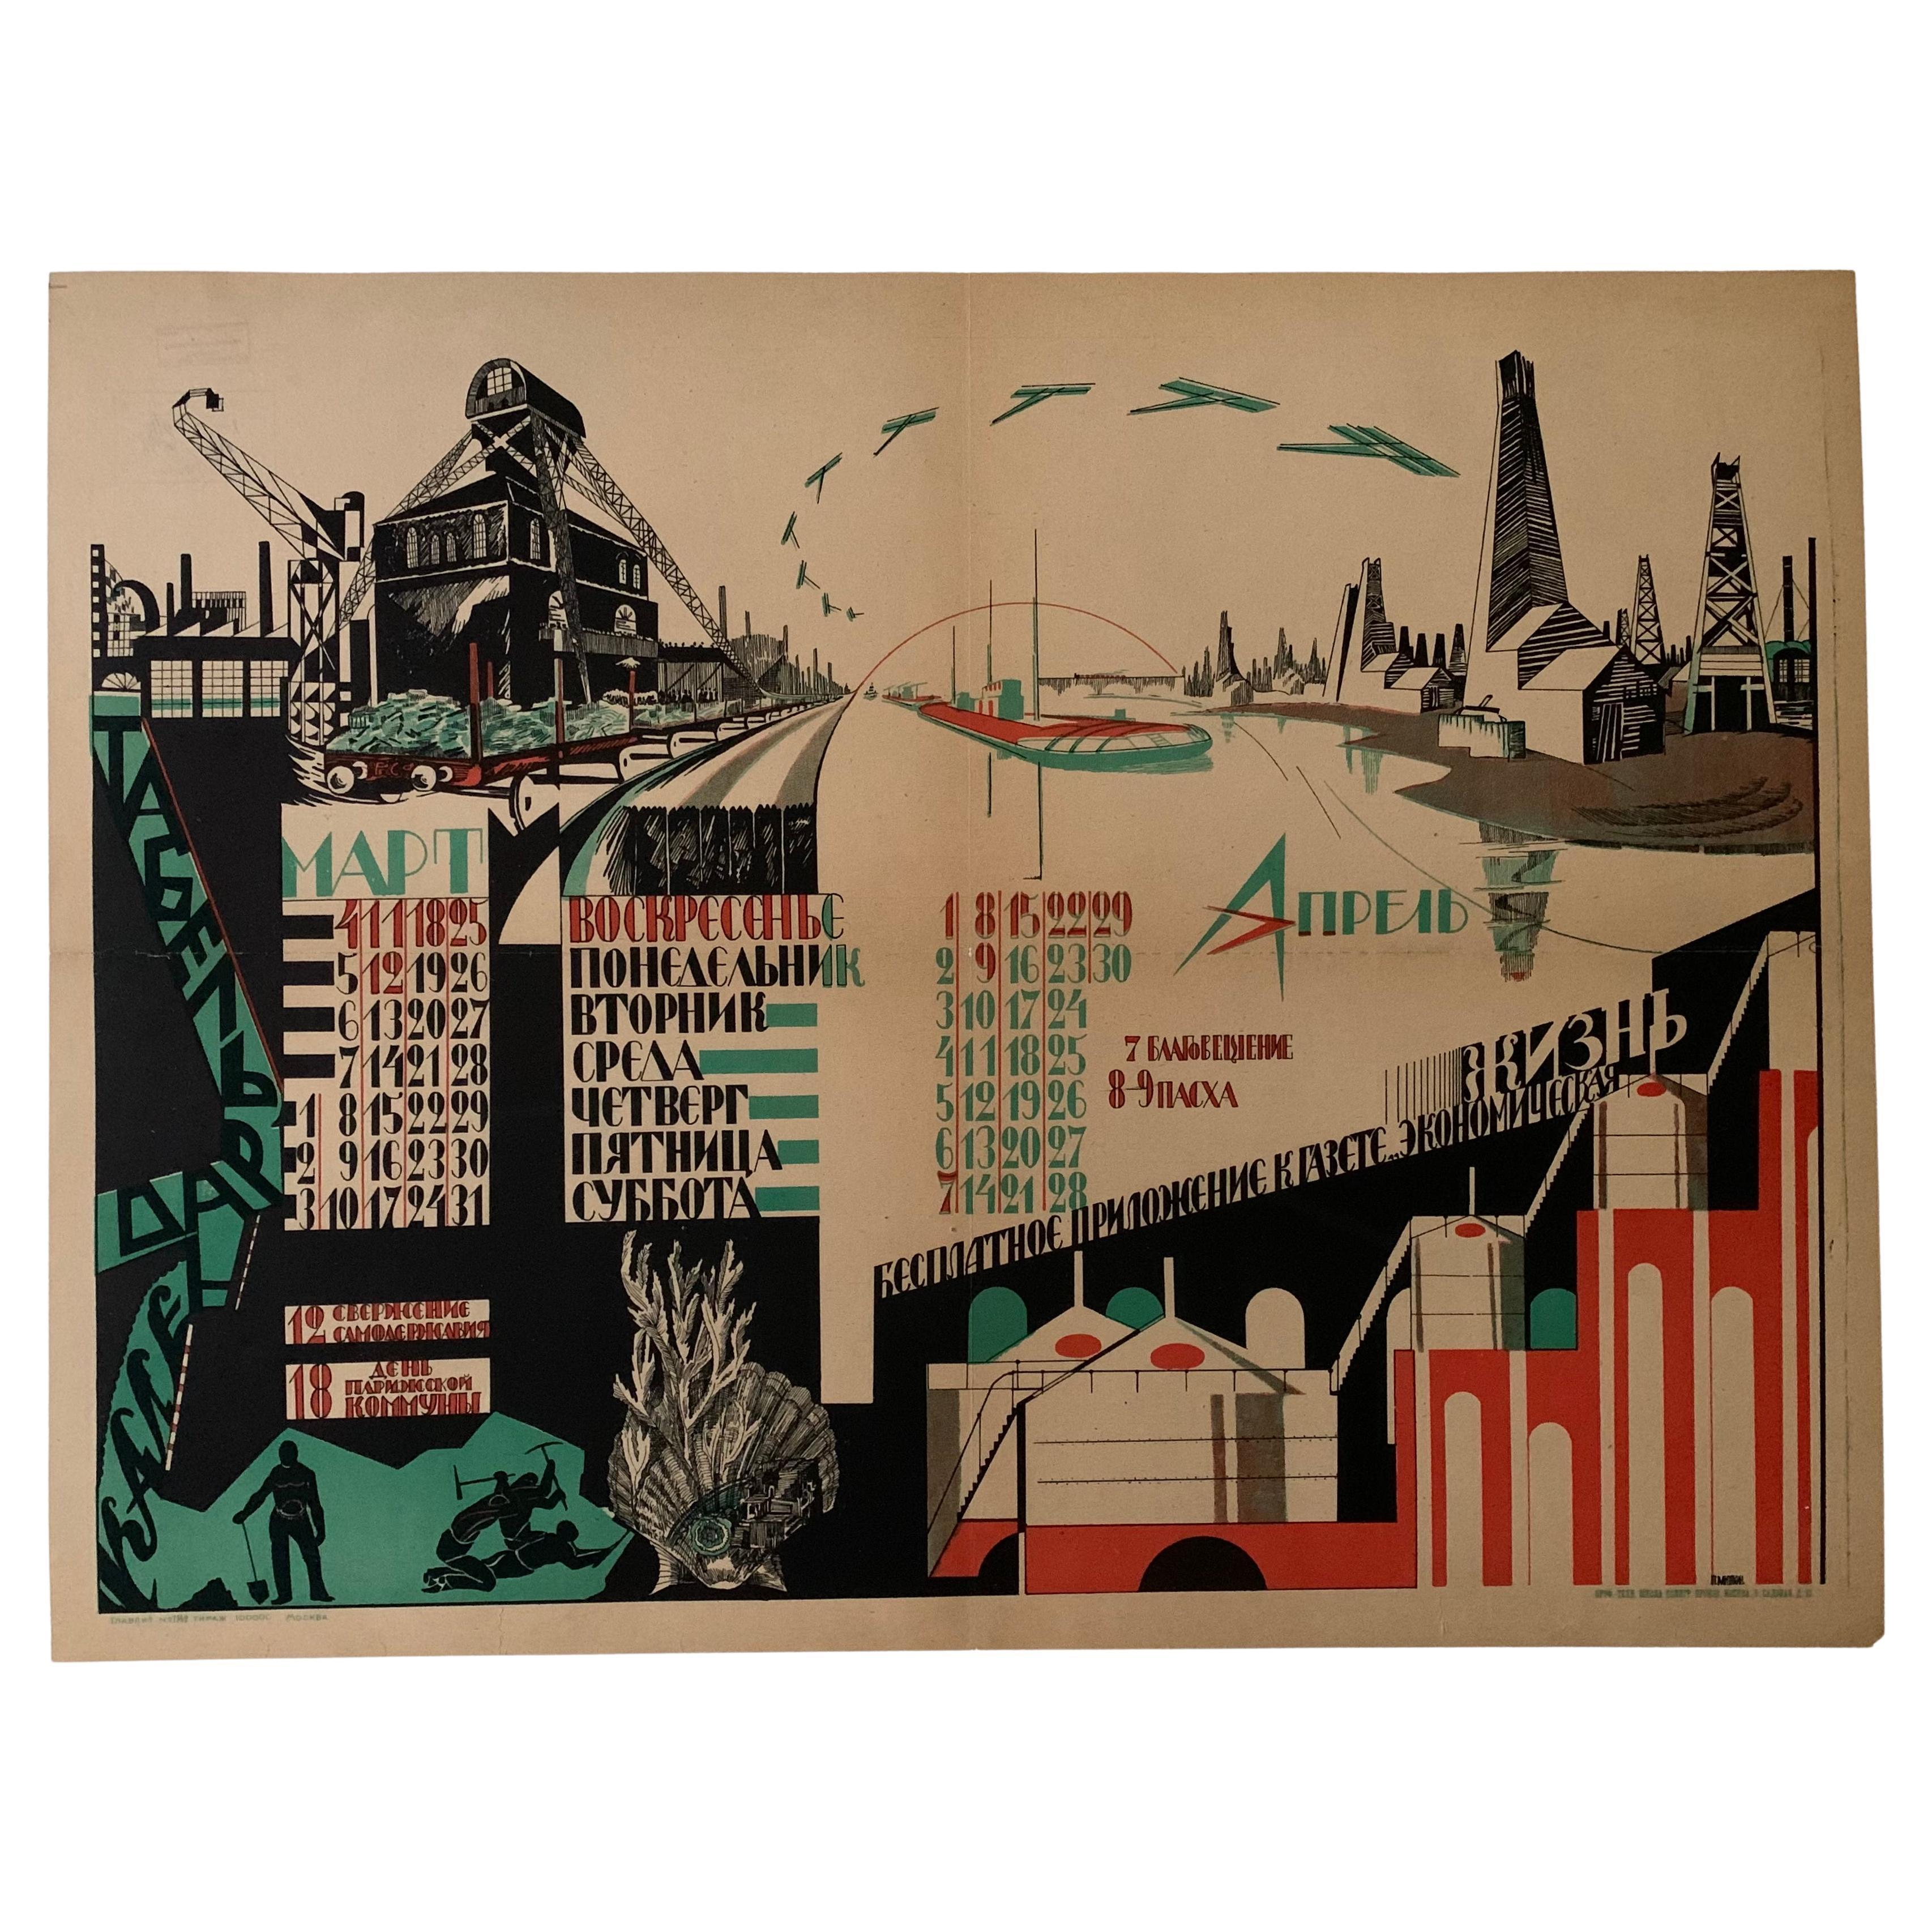 Rare affiche de propagande constructiviste soviétique d'avant-garde russe par Miaziakin en vente